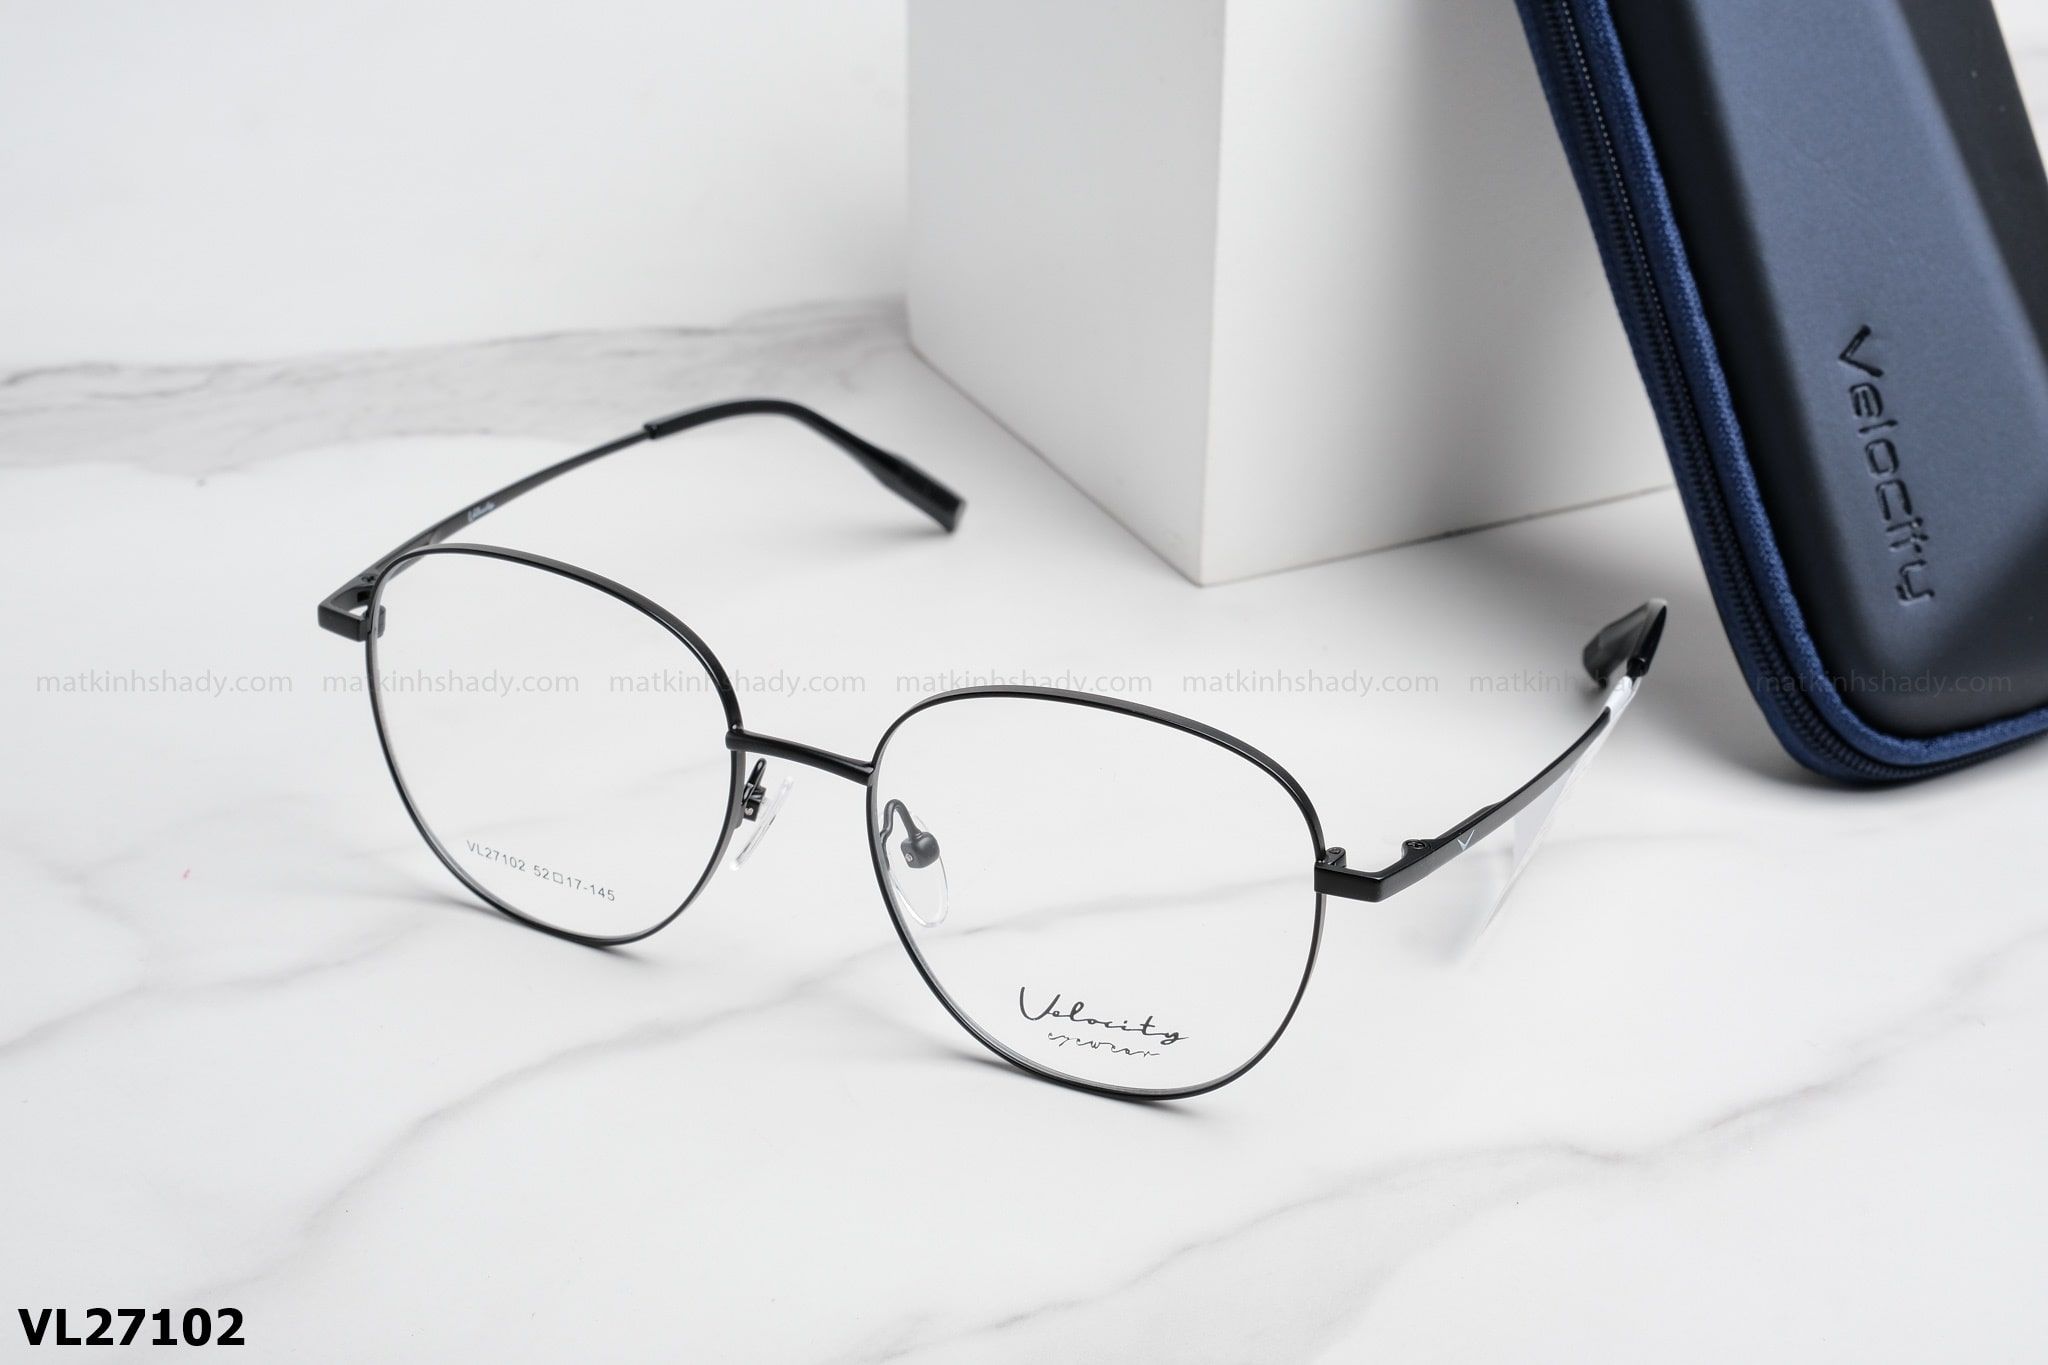  Velocity Eyewear - Glasses - VL27102 